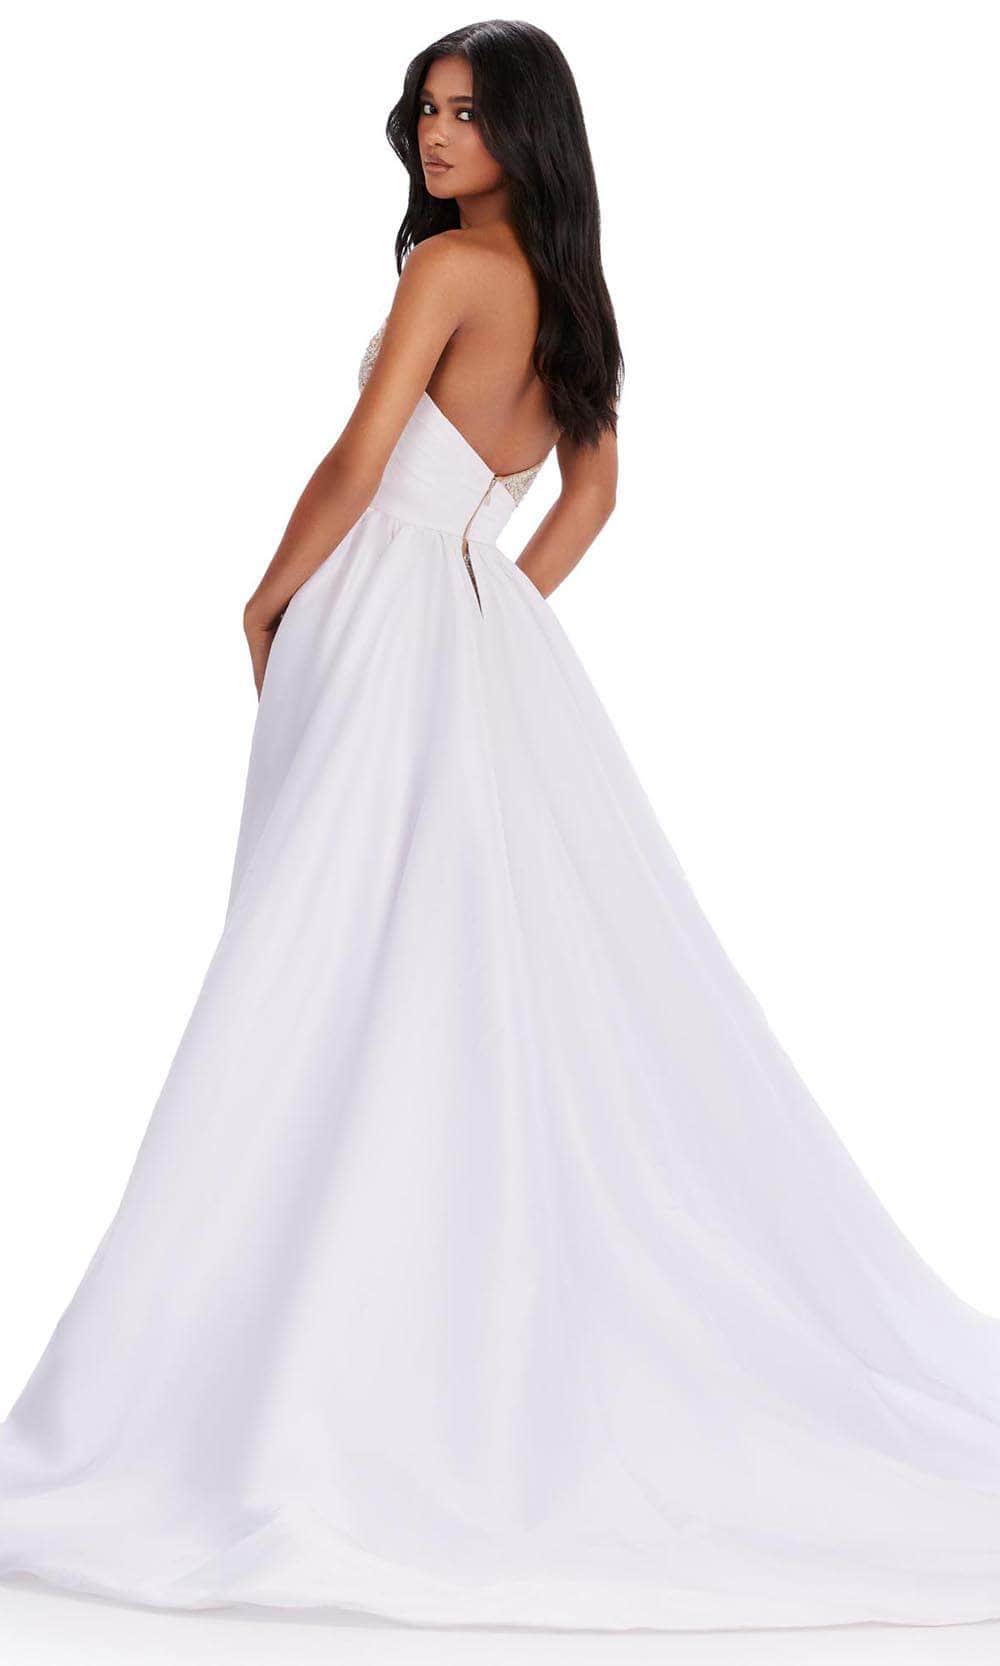 Ashley Lauren 11571 - Beaded Strapless Gown Evening Dresses